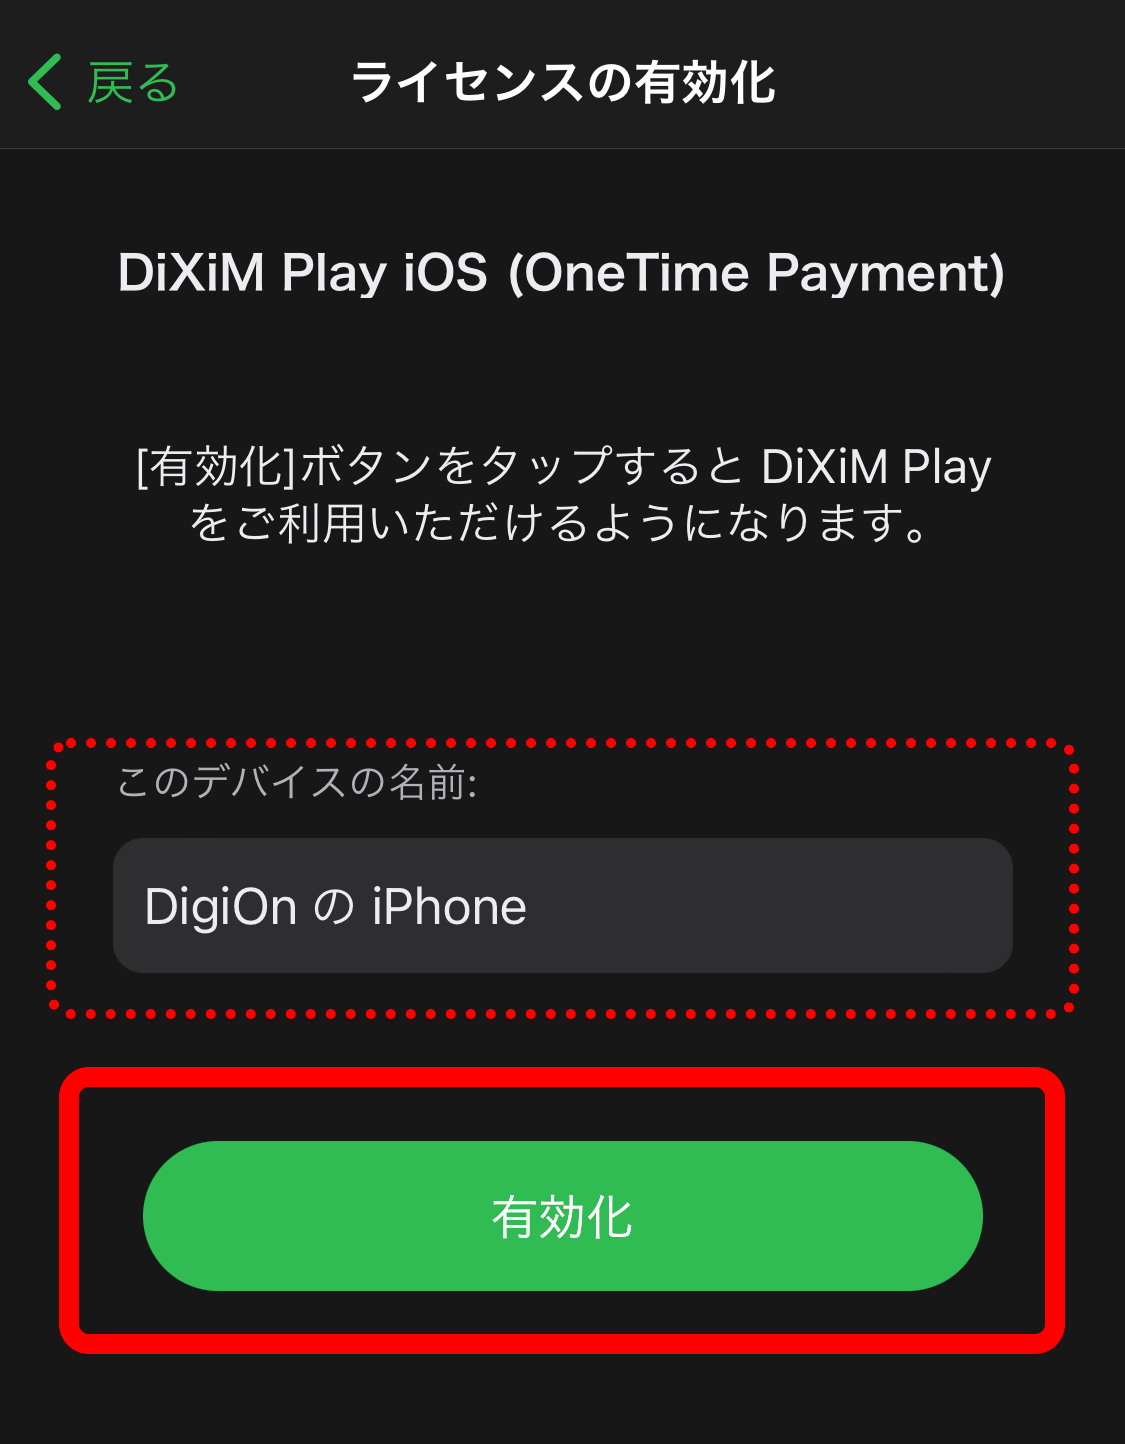 「有効化」ボタンをタップすることでDiXiM Playがご利用可能になります